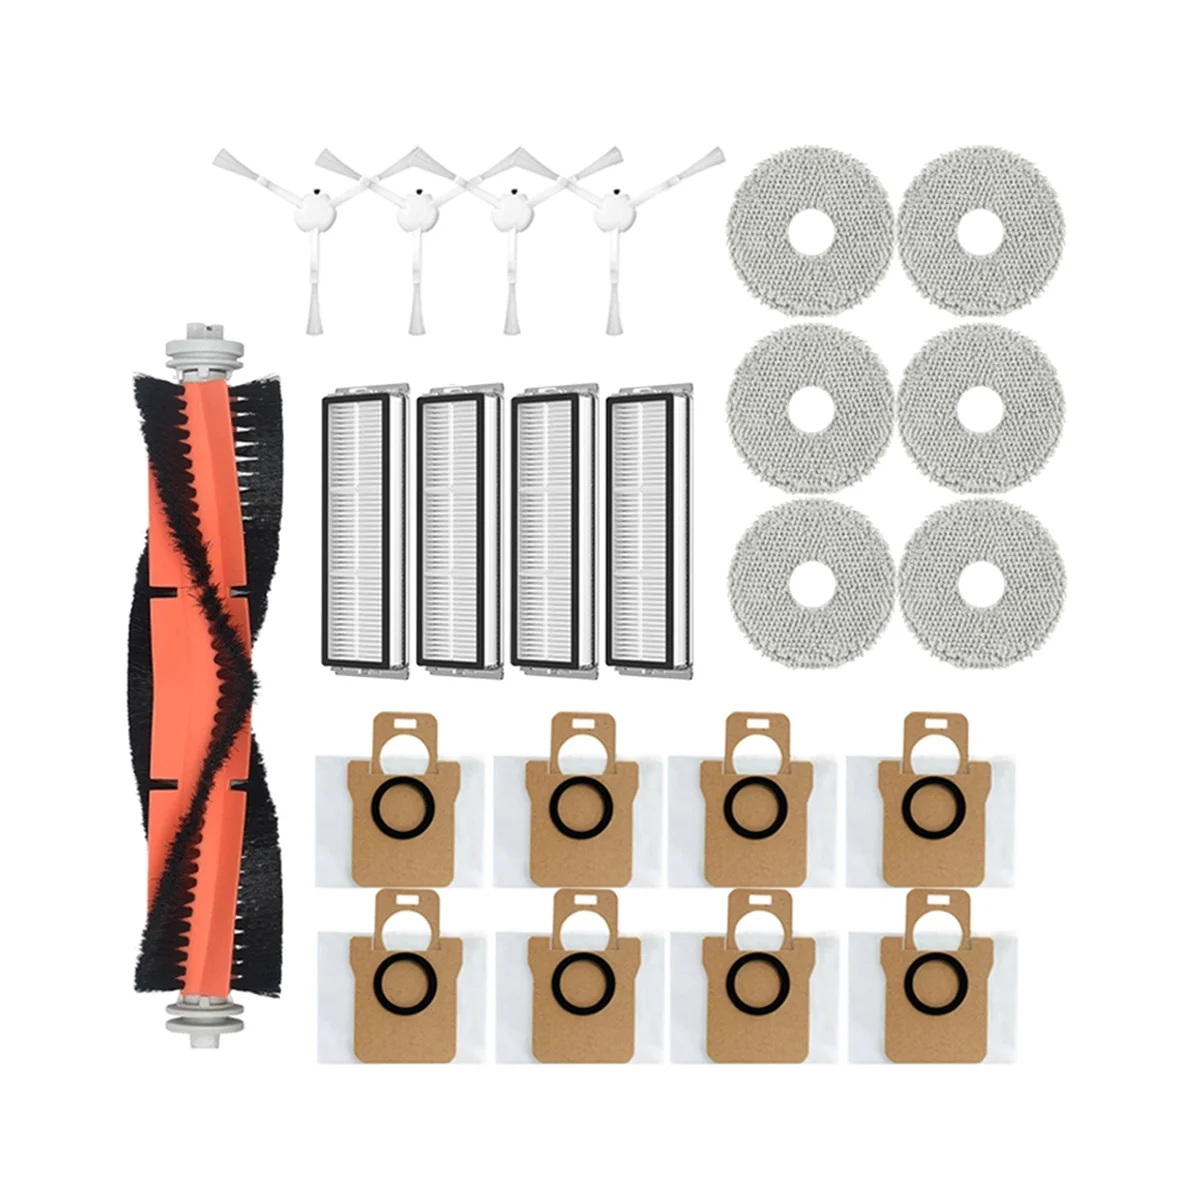 

Аксессуары для XIAOMI Mijia Omni 1S B101CN B116, основная боковая щетка, Hepa фильтр, Швабра, пылесборник, детали для робота-пылесоса